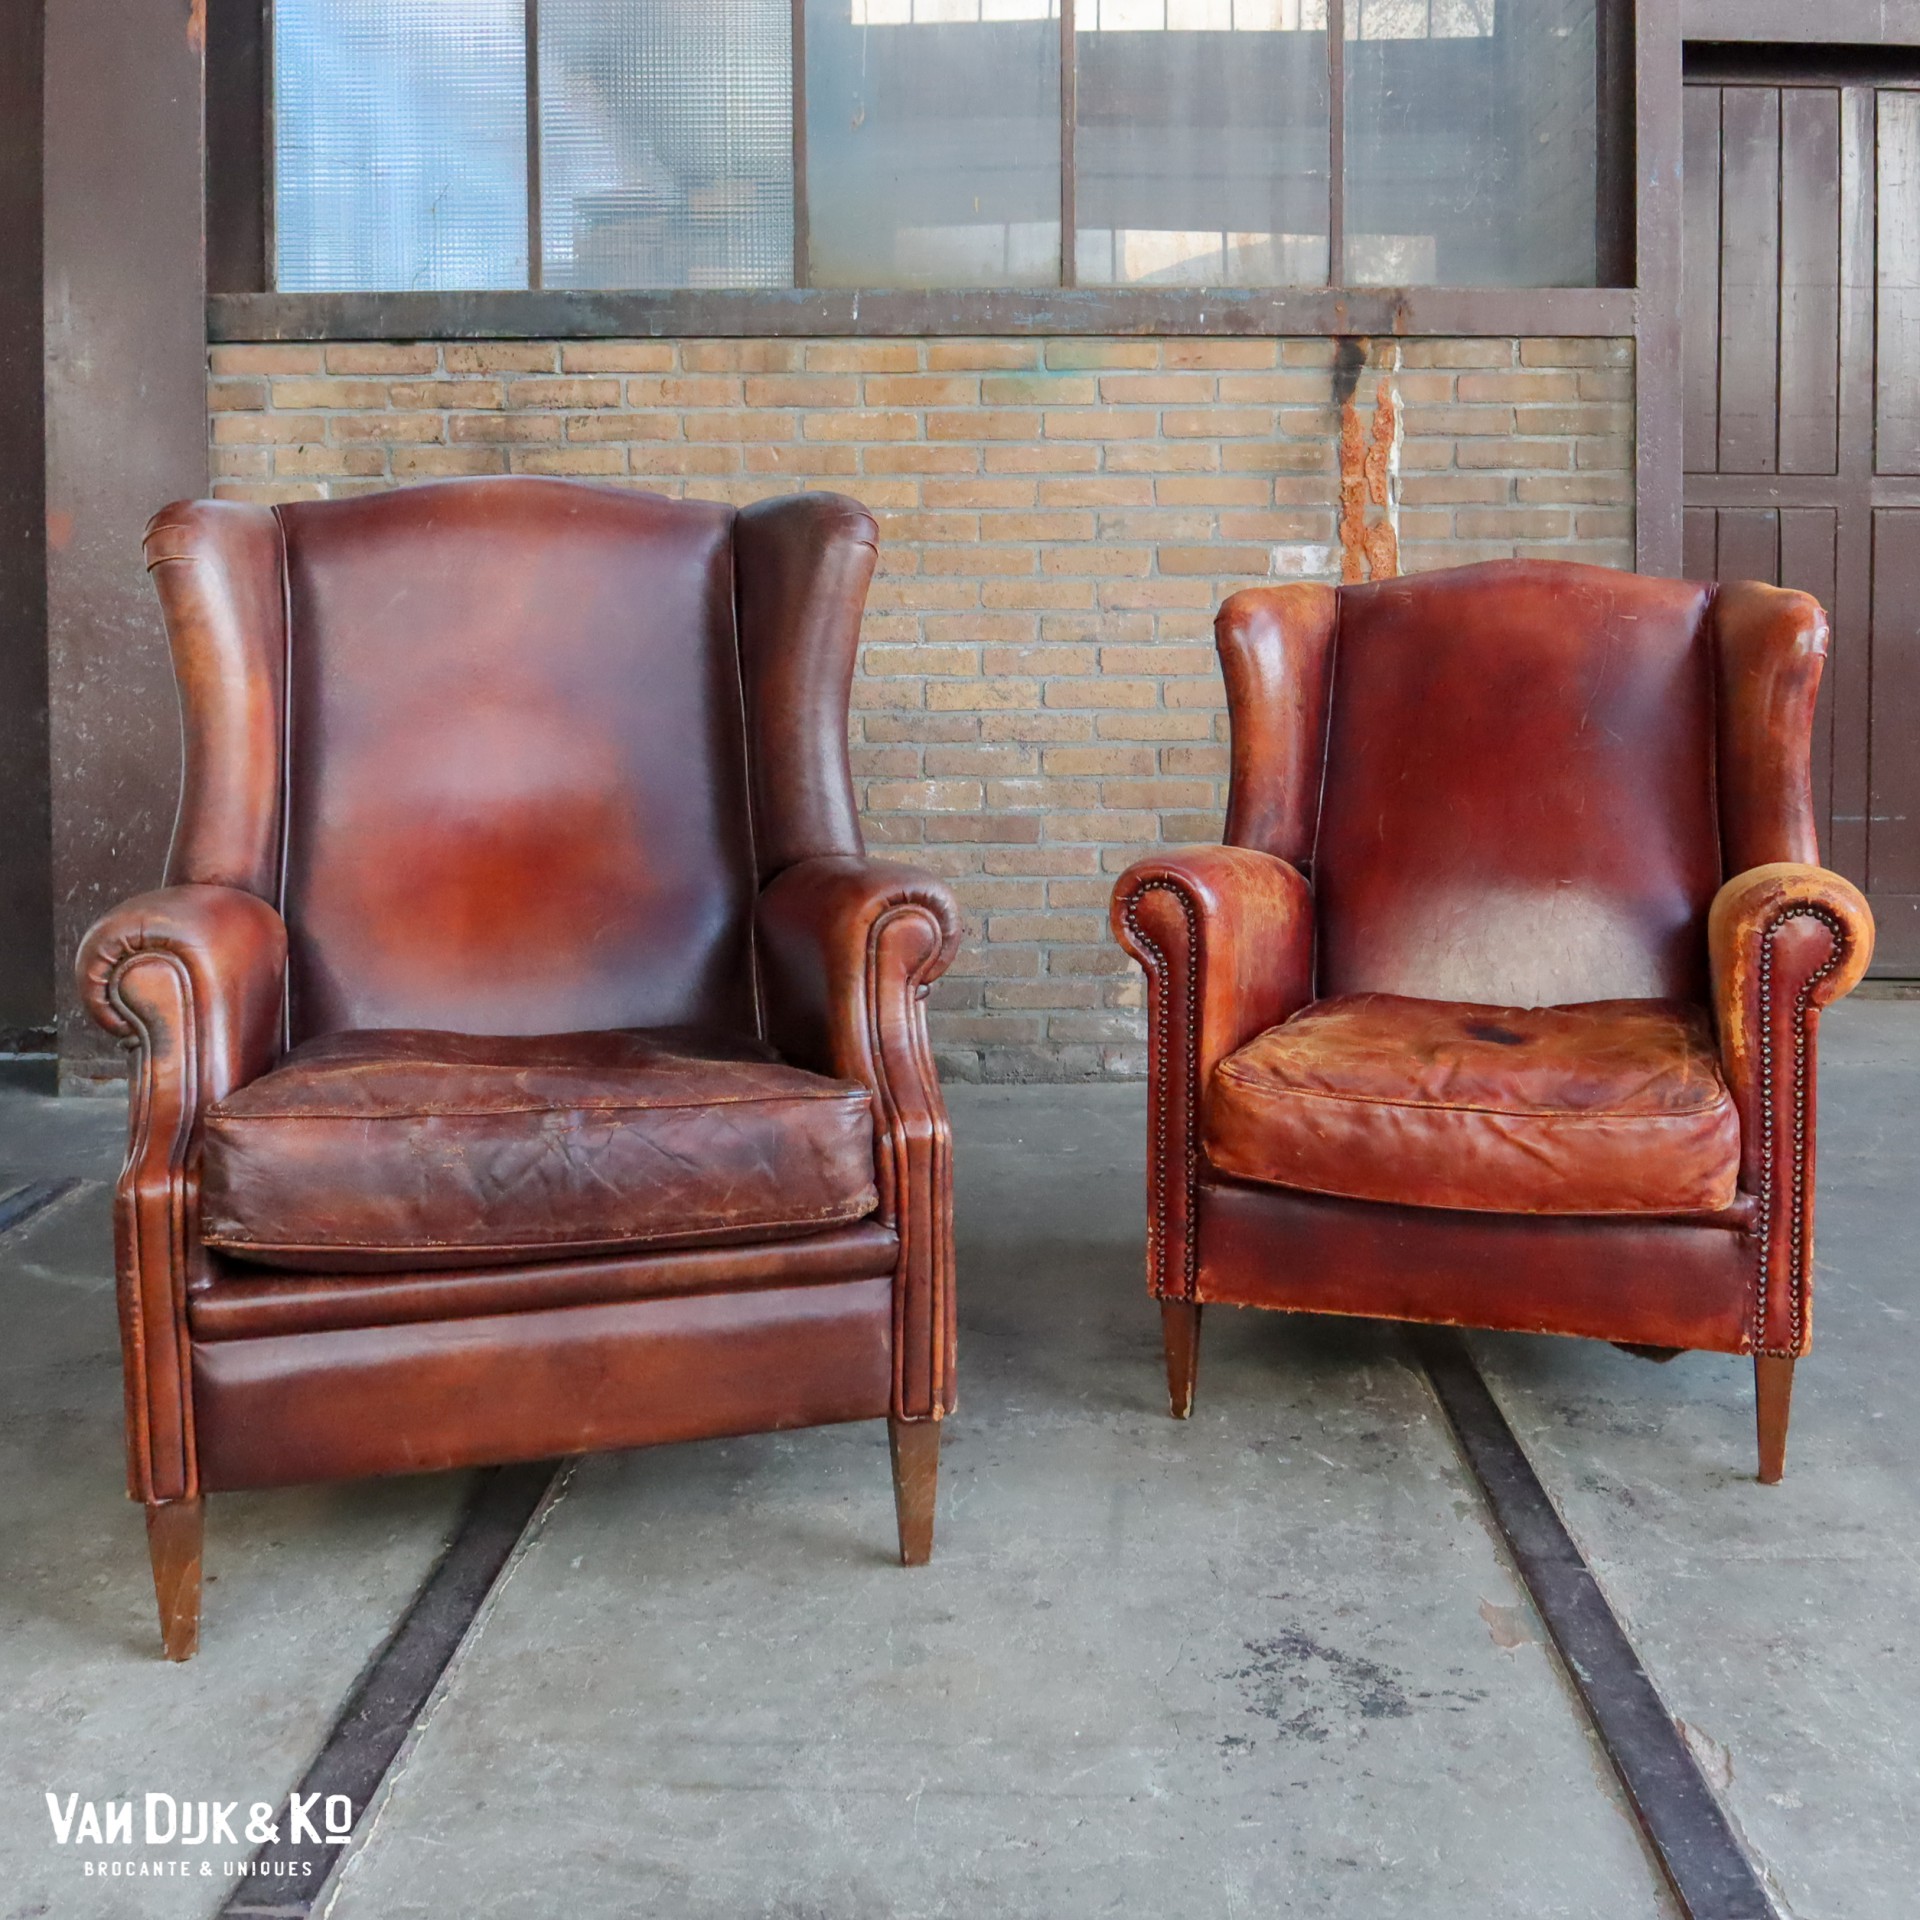 mineraal Antecedent harpoen Vintage leren fauteuil » Van Dijk & Ko